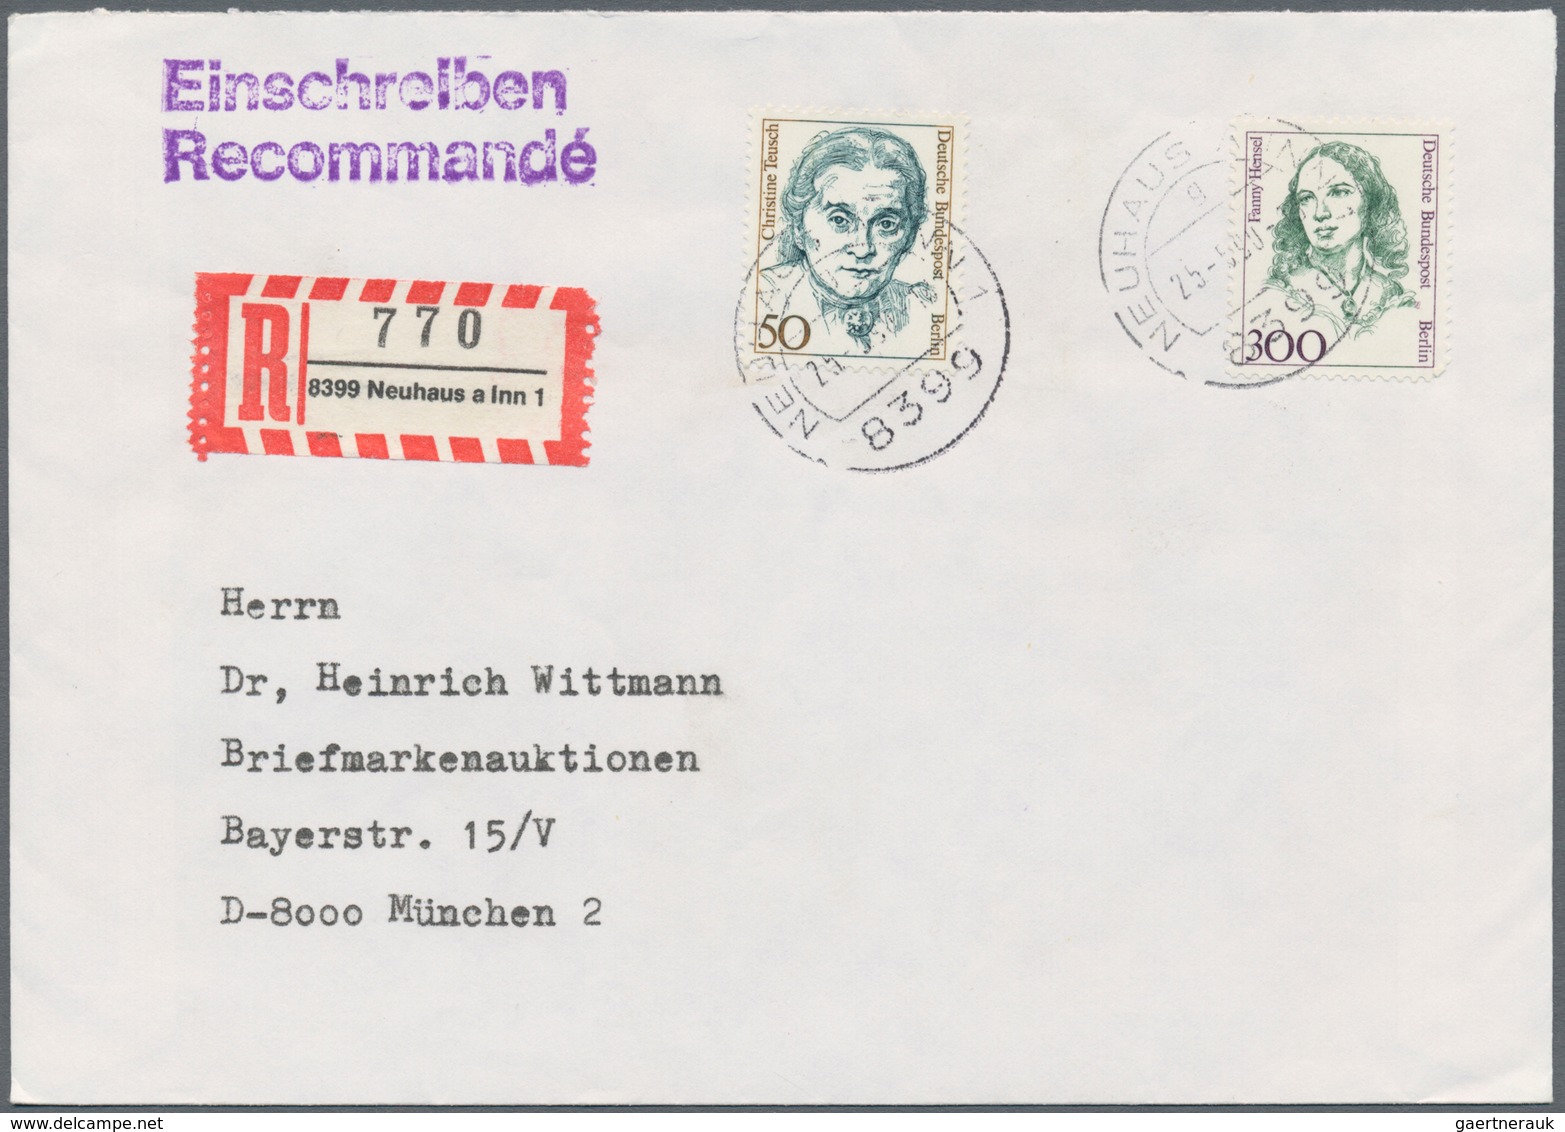 Berlin: 1980/1991 (ca.), vielseitiger Bestand von über 250 Briefen und Karten aus Firmen-Korresponde